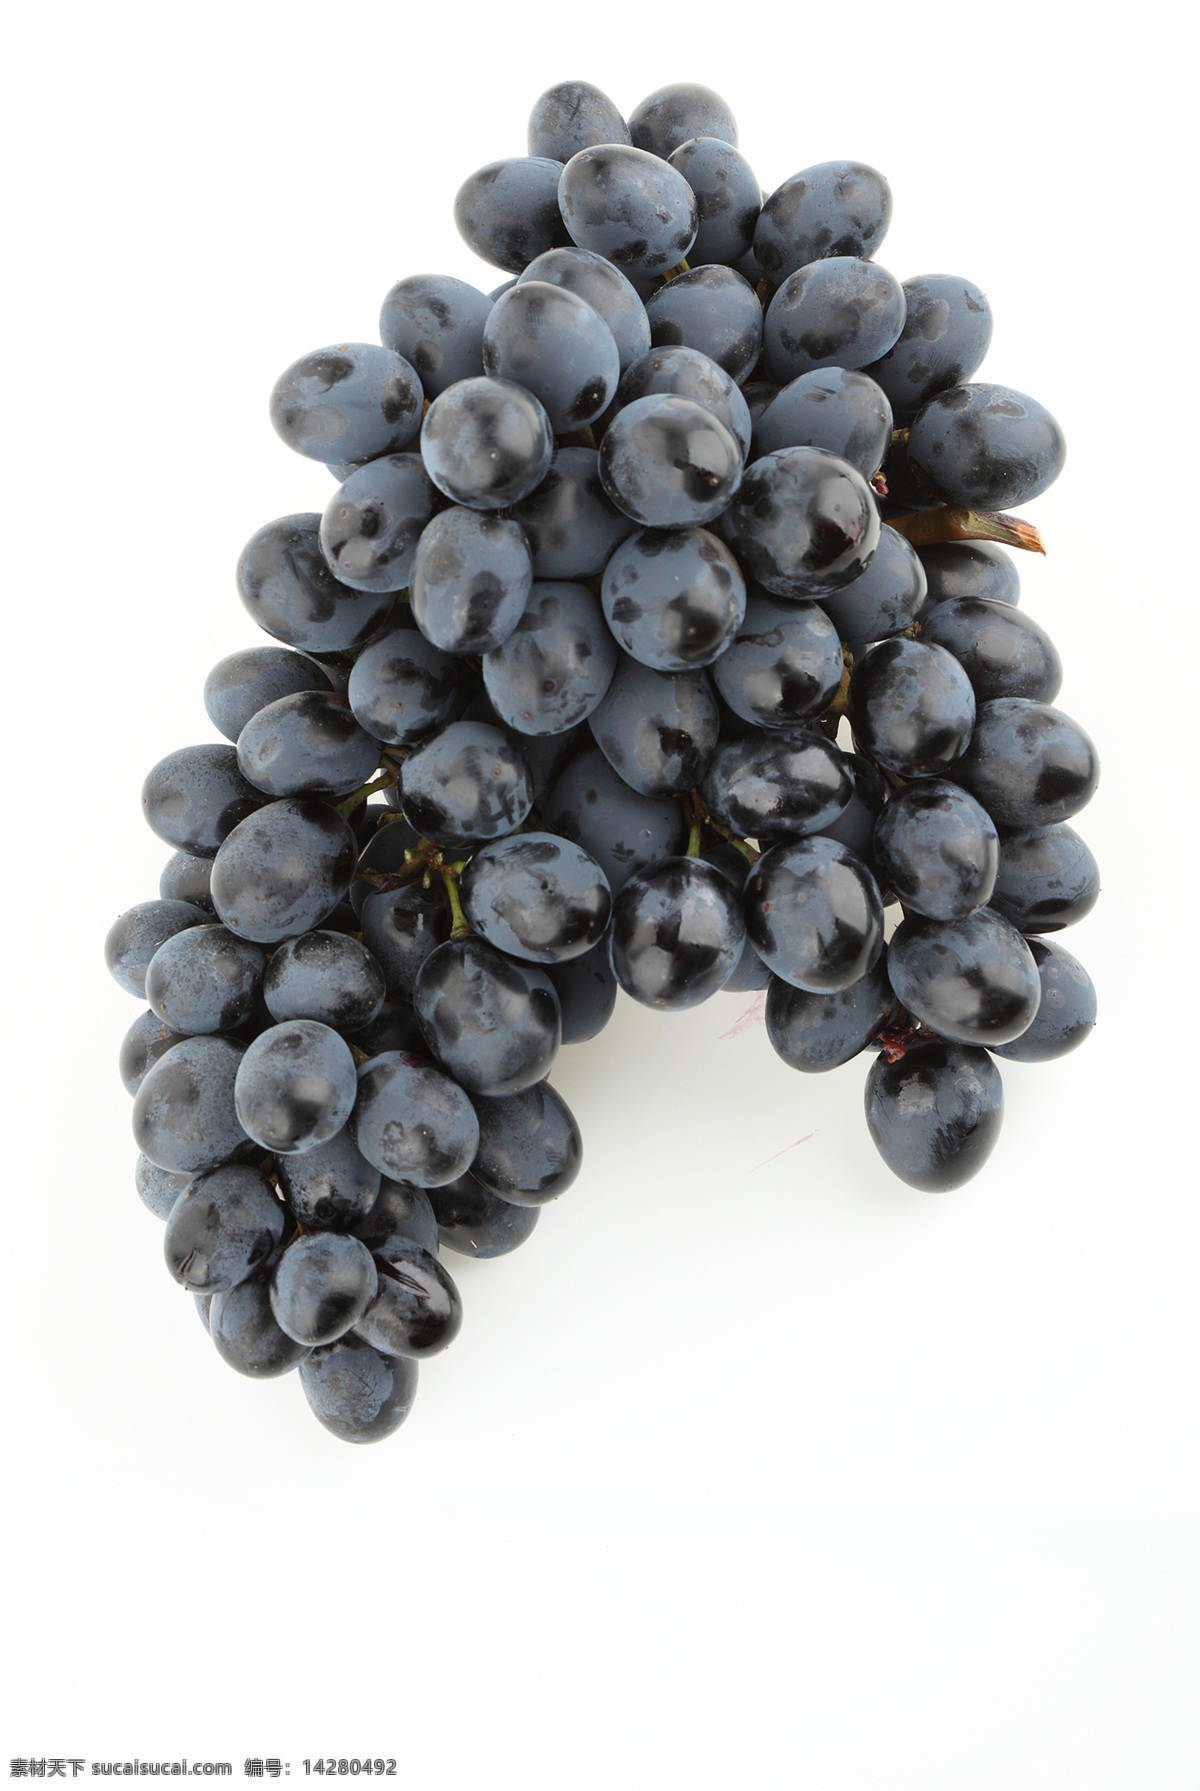 串 新鲜 葡萄 紫葡萄 成熟葡萄 果实 果子 水果 新鲜水果 水果背景 水果图片 餐饮美食